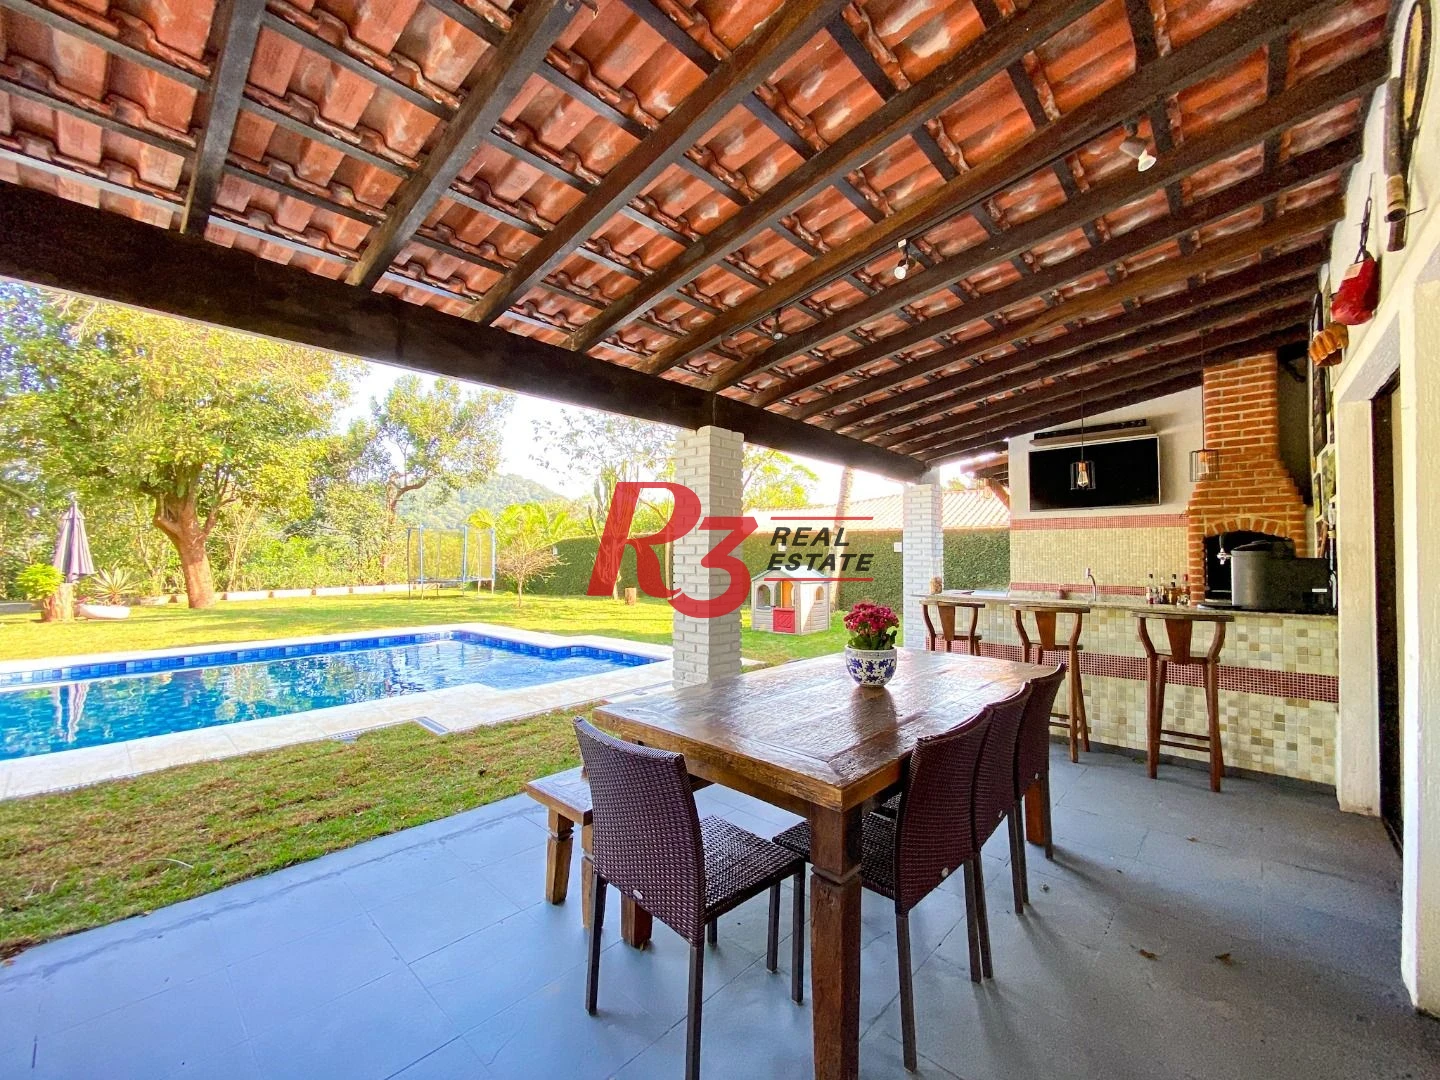 Casa com 4 dormitórios à venda, 473 m² por R$ 1.900.000,00 - Morro dos Barbosas - São Vicente/SP